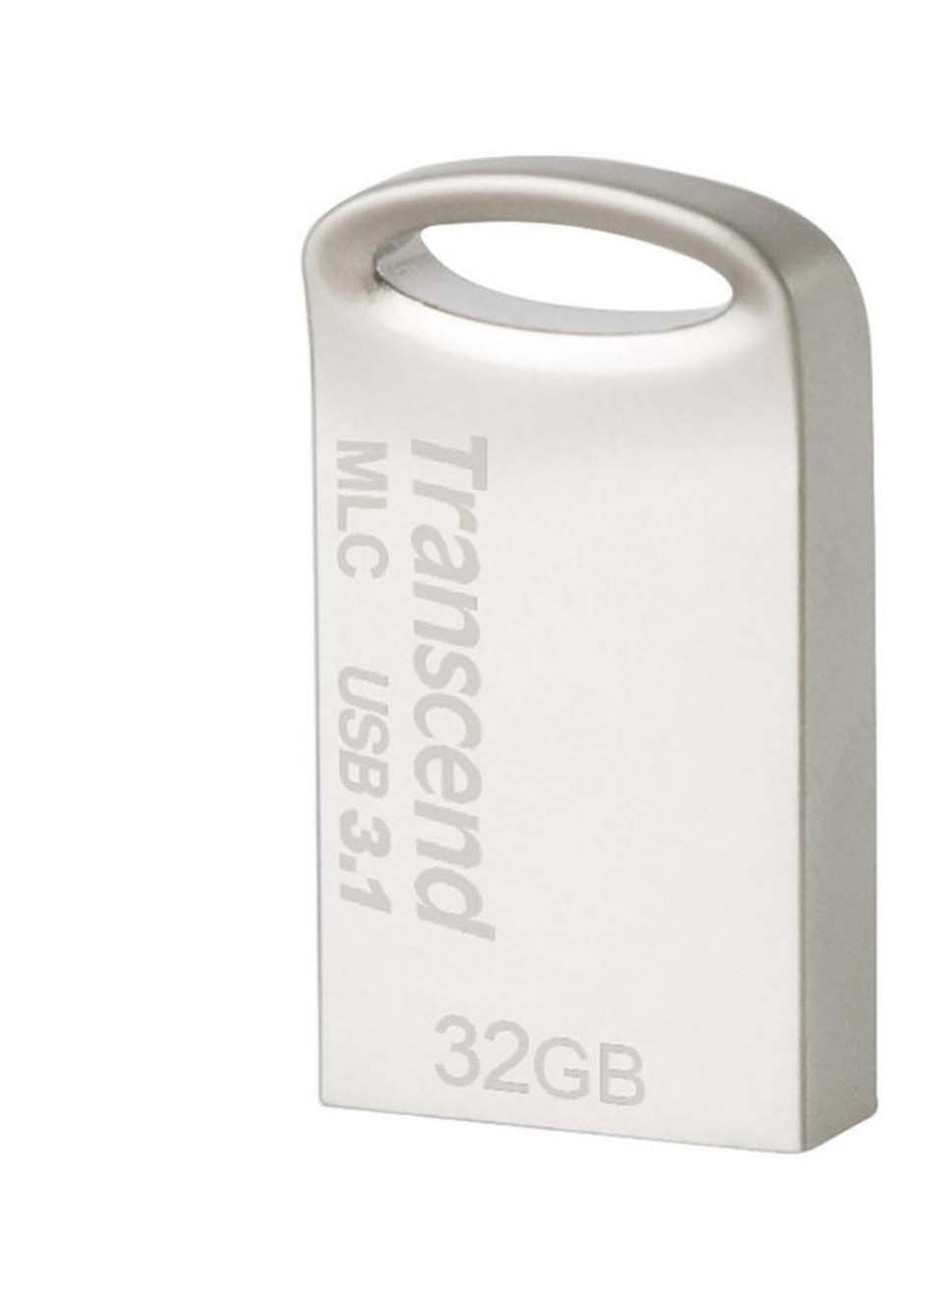 USB флеш накопитель (TS32GJF720S) Transcend 32gb jetflash 720 silver plating usb 3.1 (232750097)